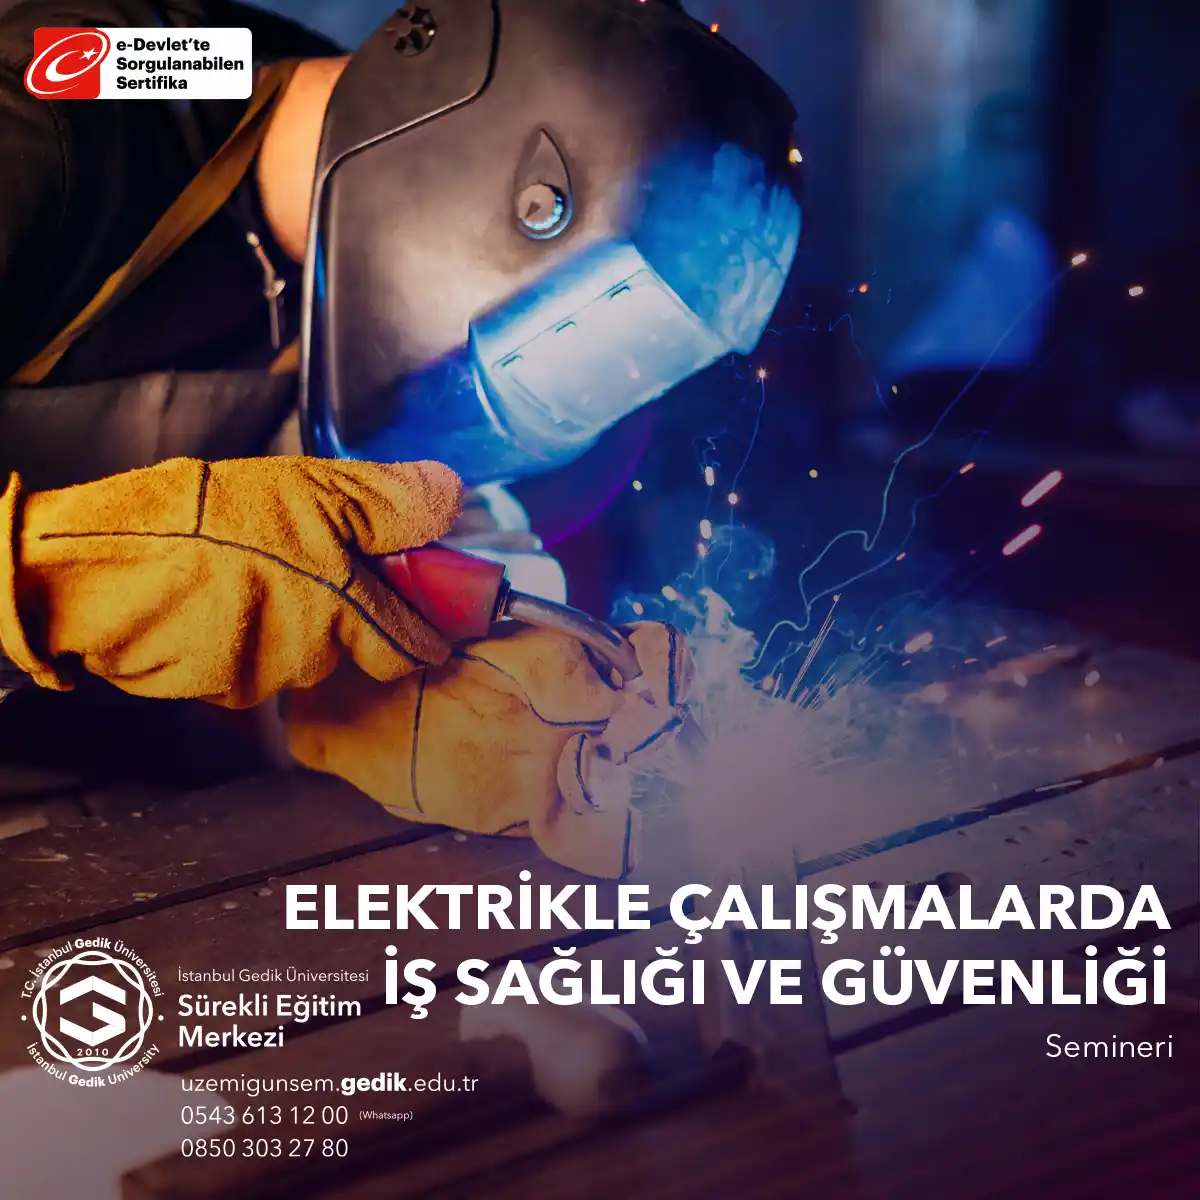 Elektrikle Çalışmalarda İş Sağlığı ve Güvenliği Semineri, elektrikle ilgili işlerde çalışanların sağlığını ve güvenliğini korumak, elektrik kaynaklı tehlikeleri anlamak ve önlemek için düzenlenen kritik bir eğitim programıdır.